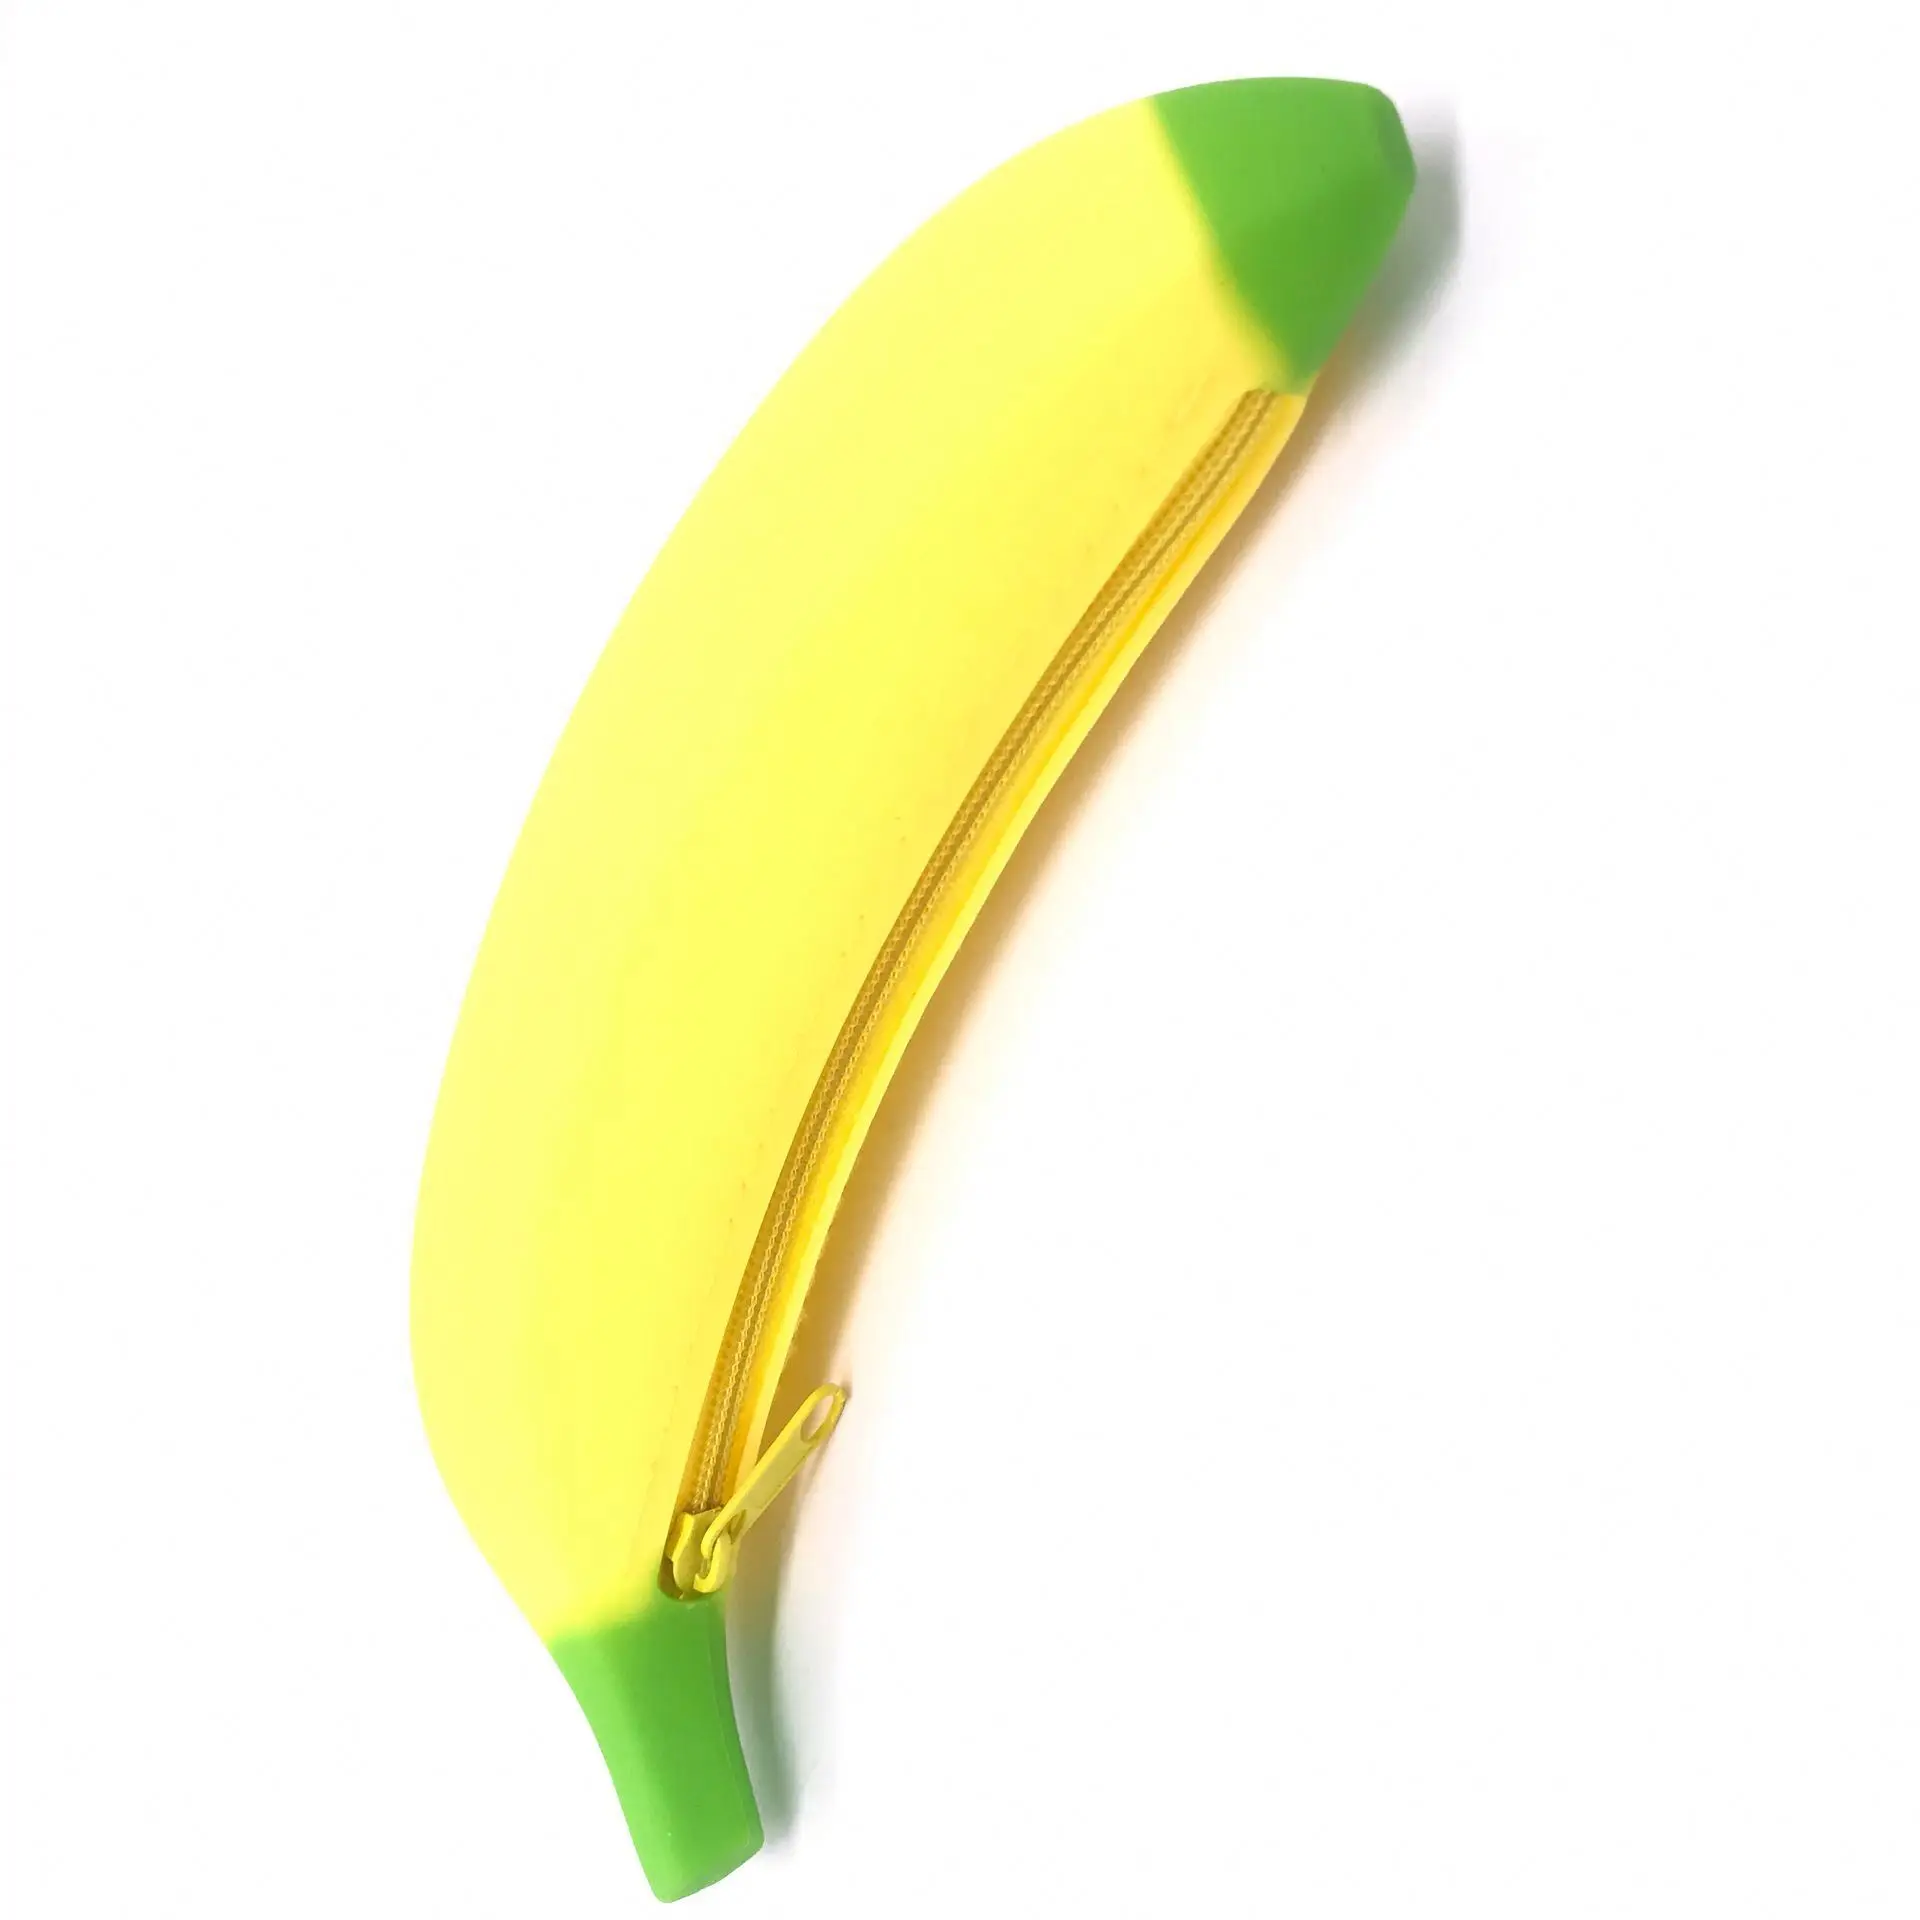 Пенал банан силиконовый. Сумка в форме банана. Блэк банана пенсил. БИК банана пенсил. Банана пенсил